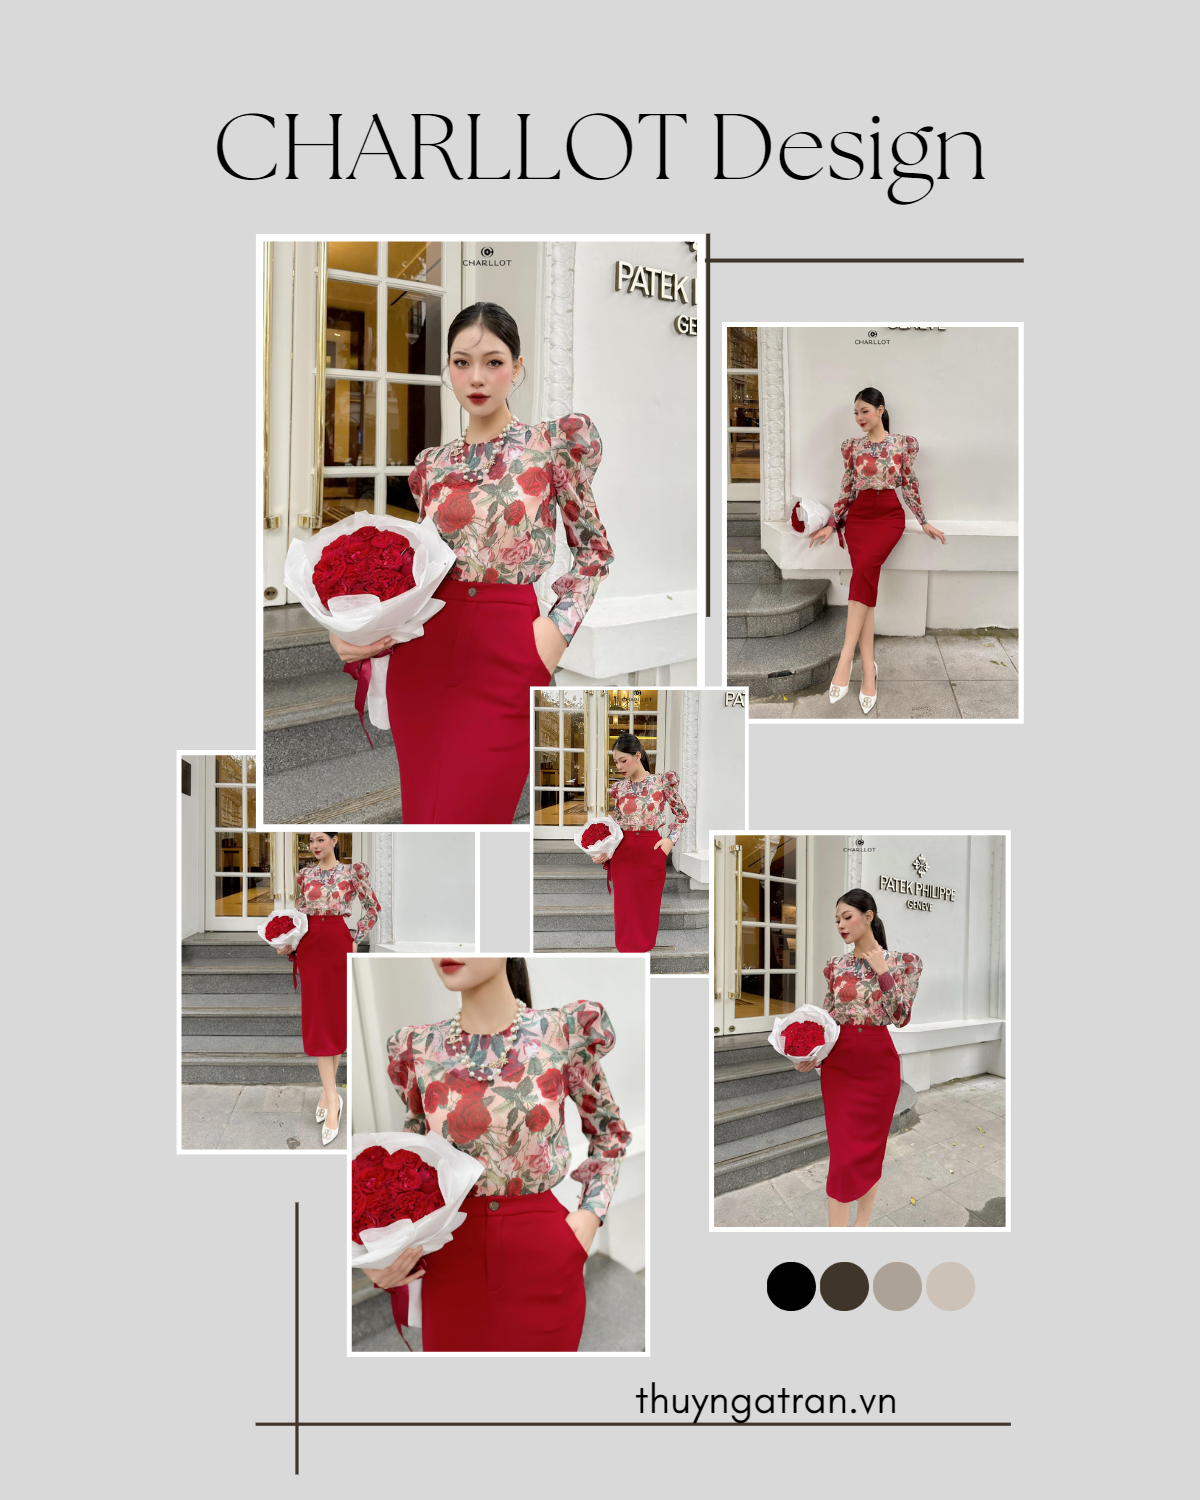 Thời trang Charllot design và hành trình truyền cảm hứng “mặc đẹp để thành công” - ảnh 4